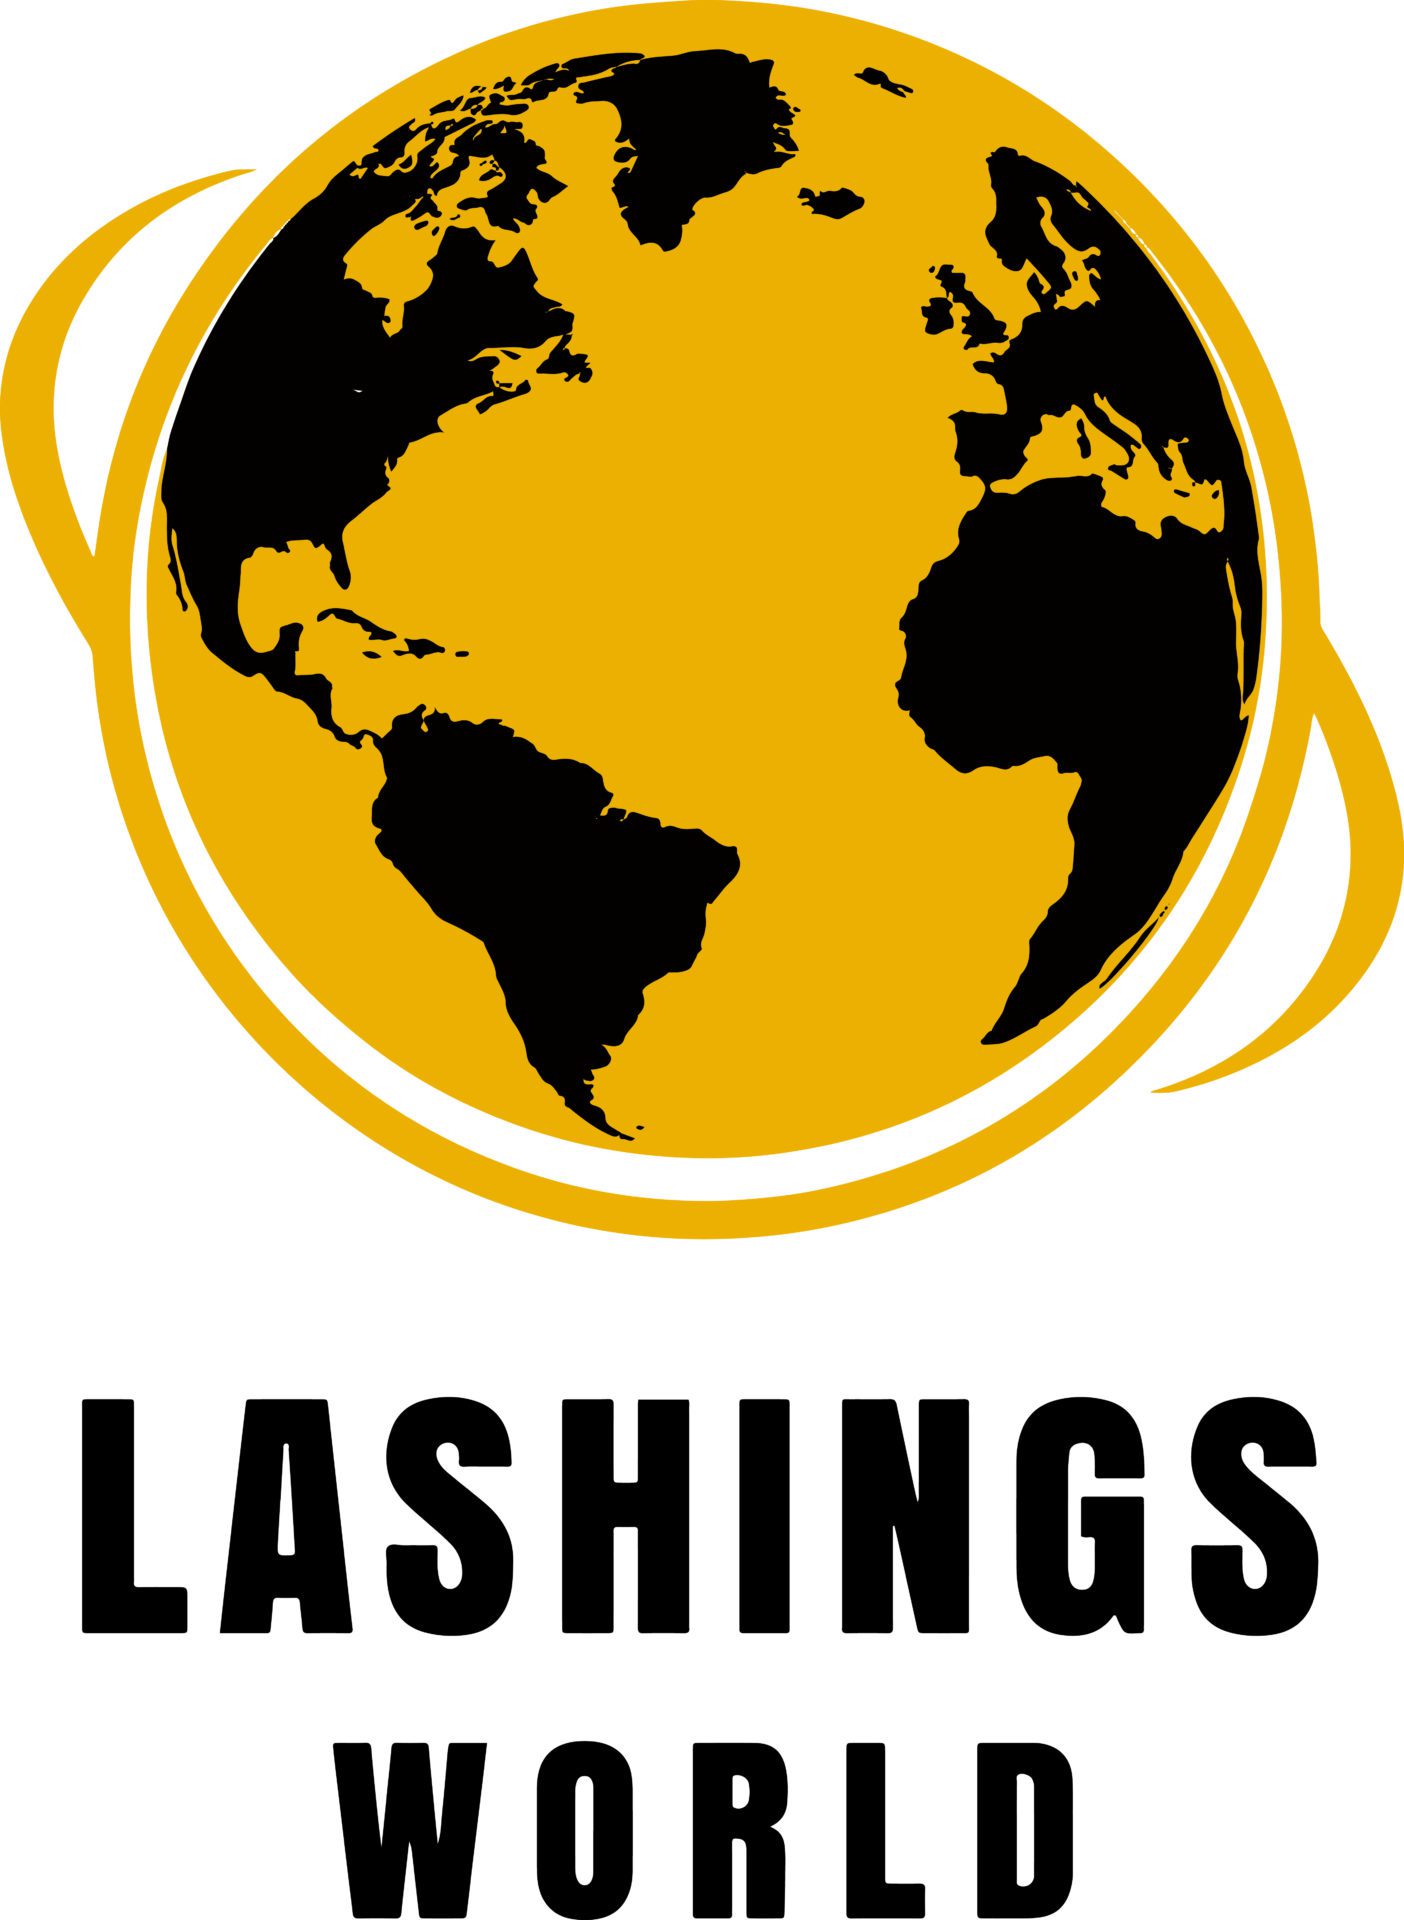 Lashings World X1 Ltd